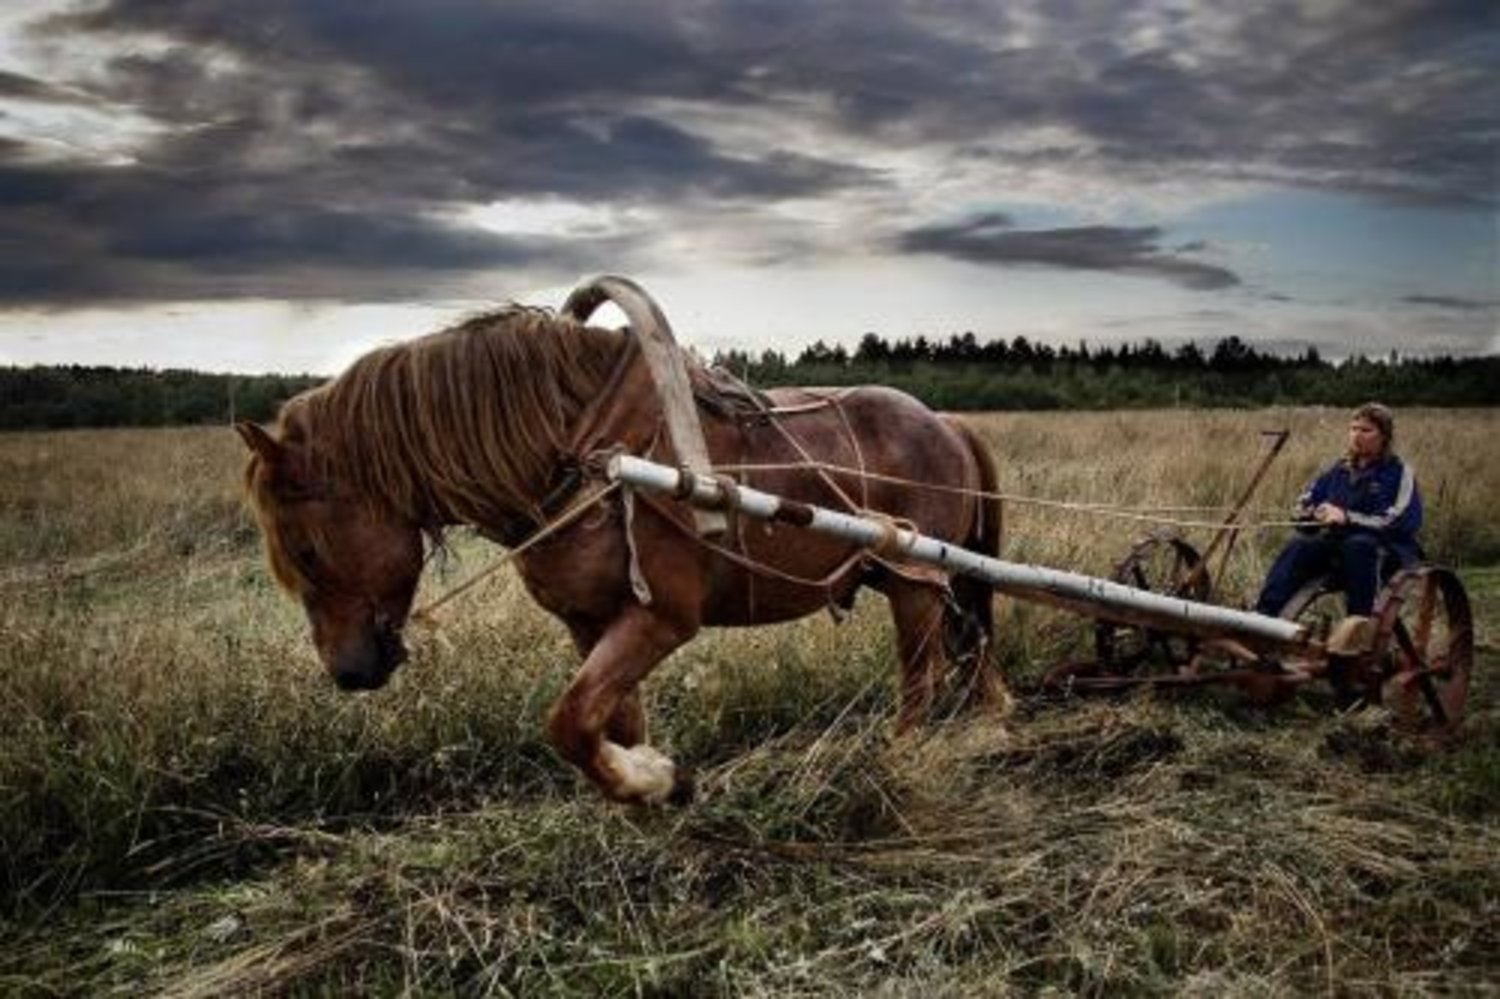 Невдалеке стояла телега запряженная. Лошадь в поле. Лошади в деревне. Телега деревенская. Рабочая лошадь.